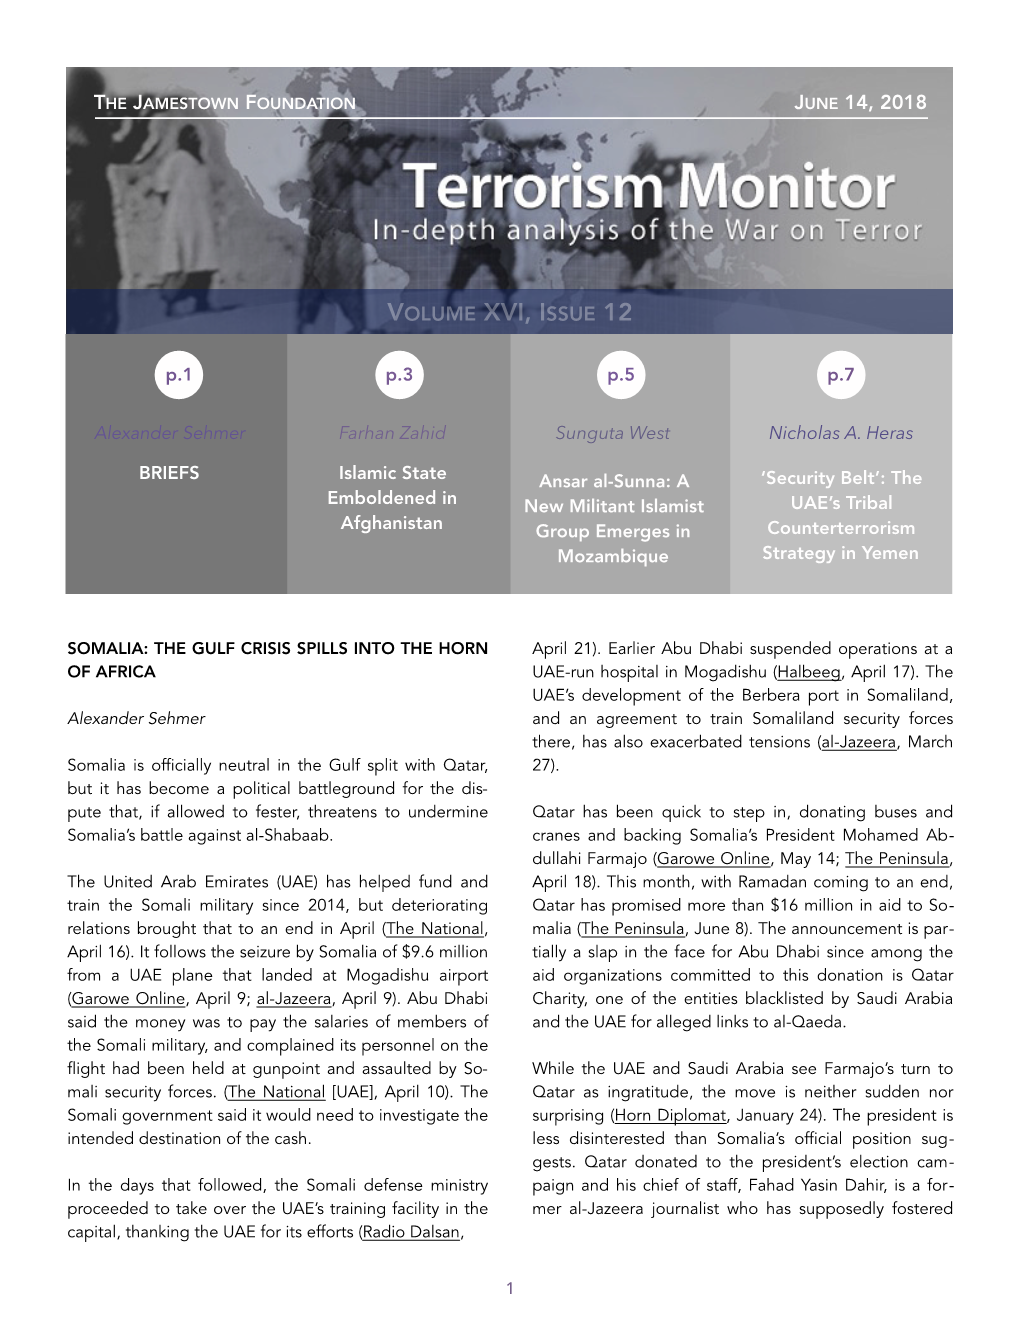 Terrorism Monitor, October 24, 2014)